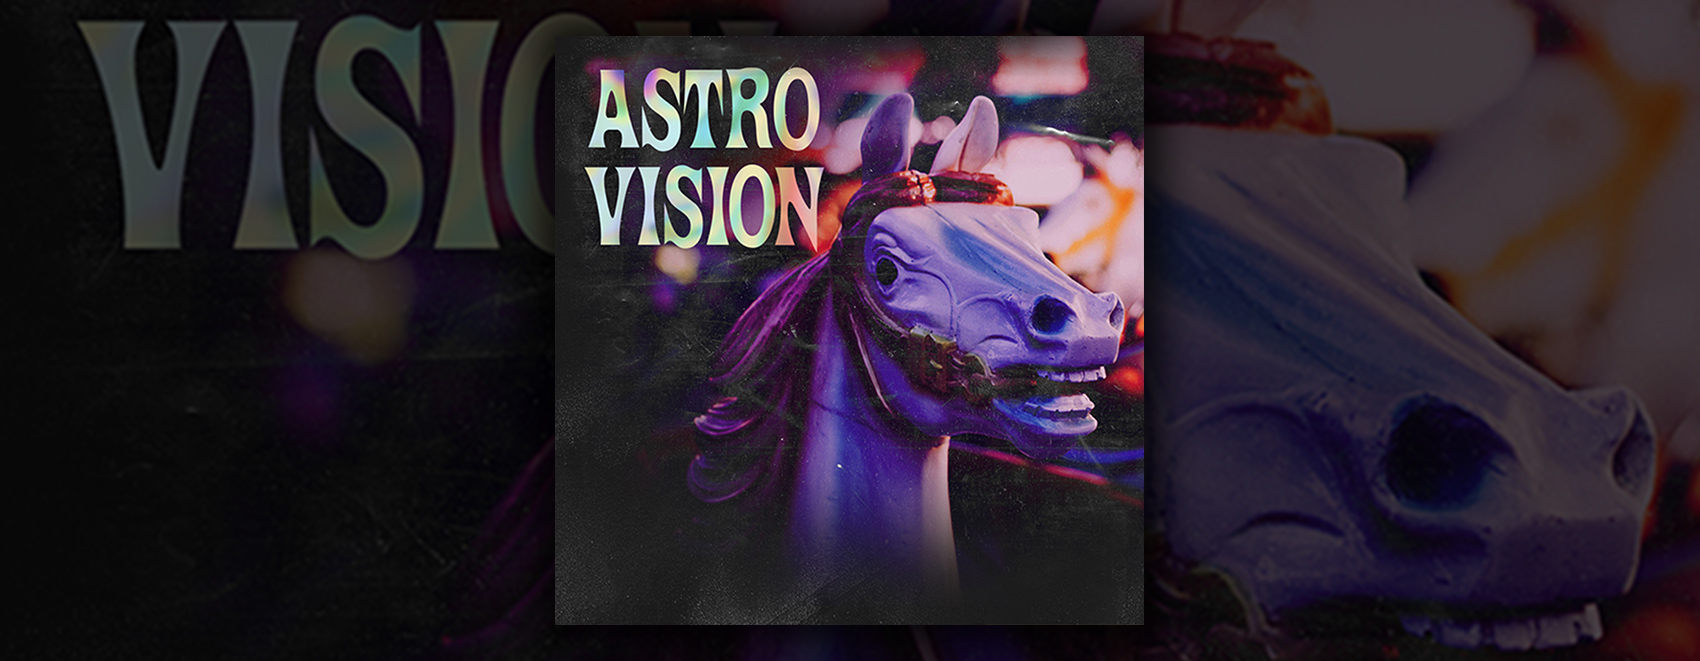 astro vision lifesign 12.5